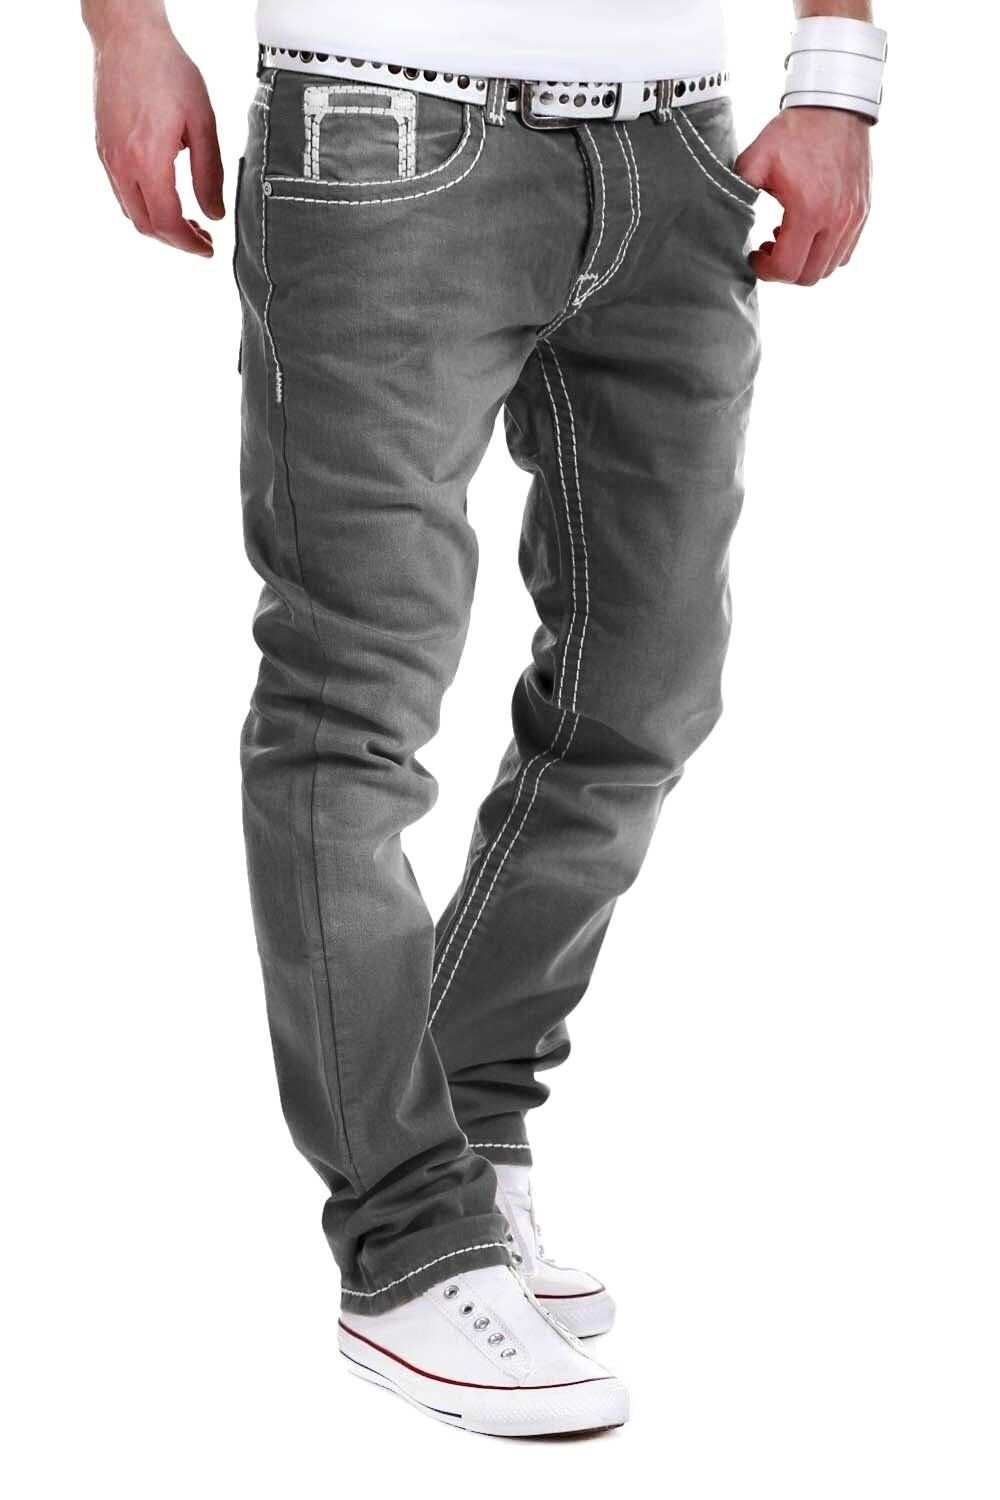 behype Jeans Stitch grau Bequeme mit Kontrastnähten dicken